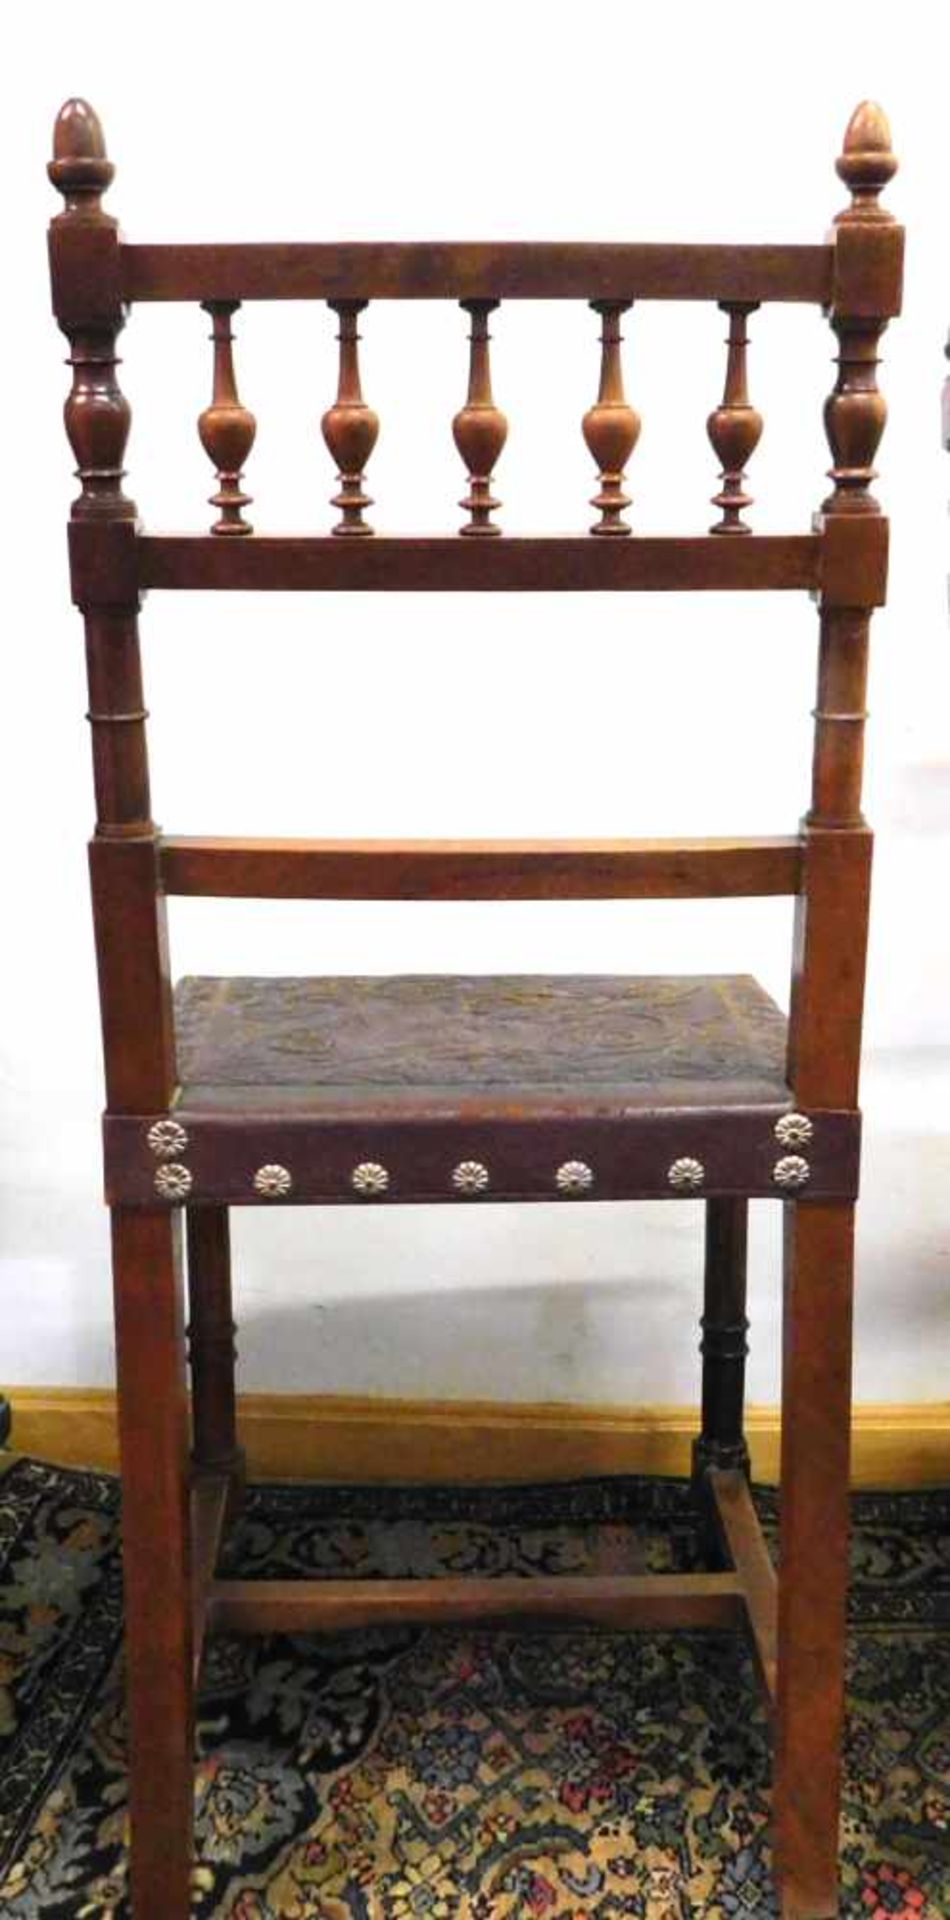 4 Stühle, Frankreich, Historismus um 1880, Nussbaum - Bild 5 aus 5